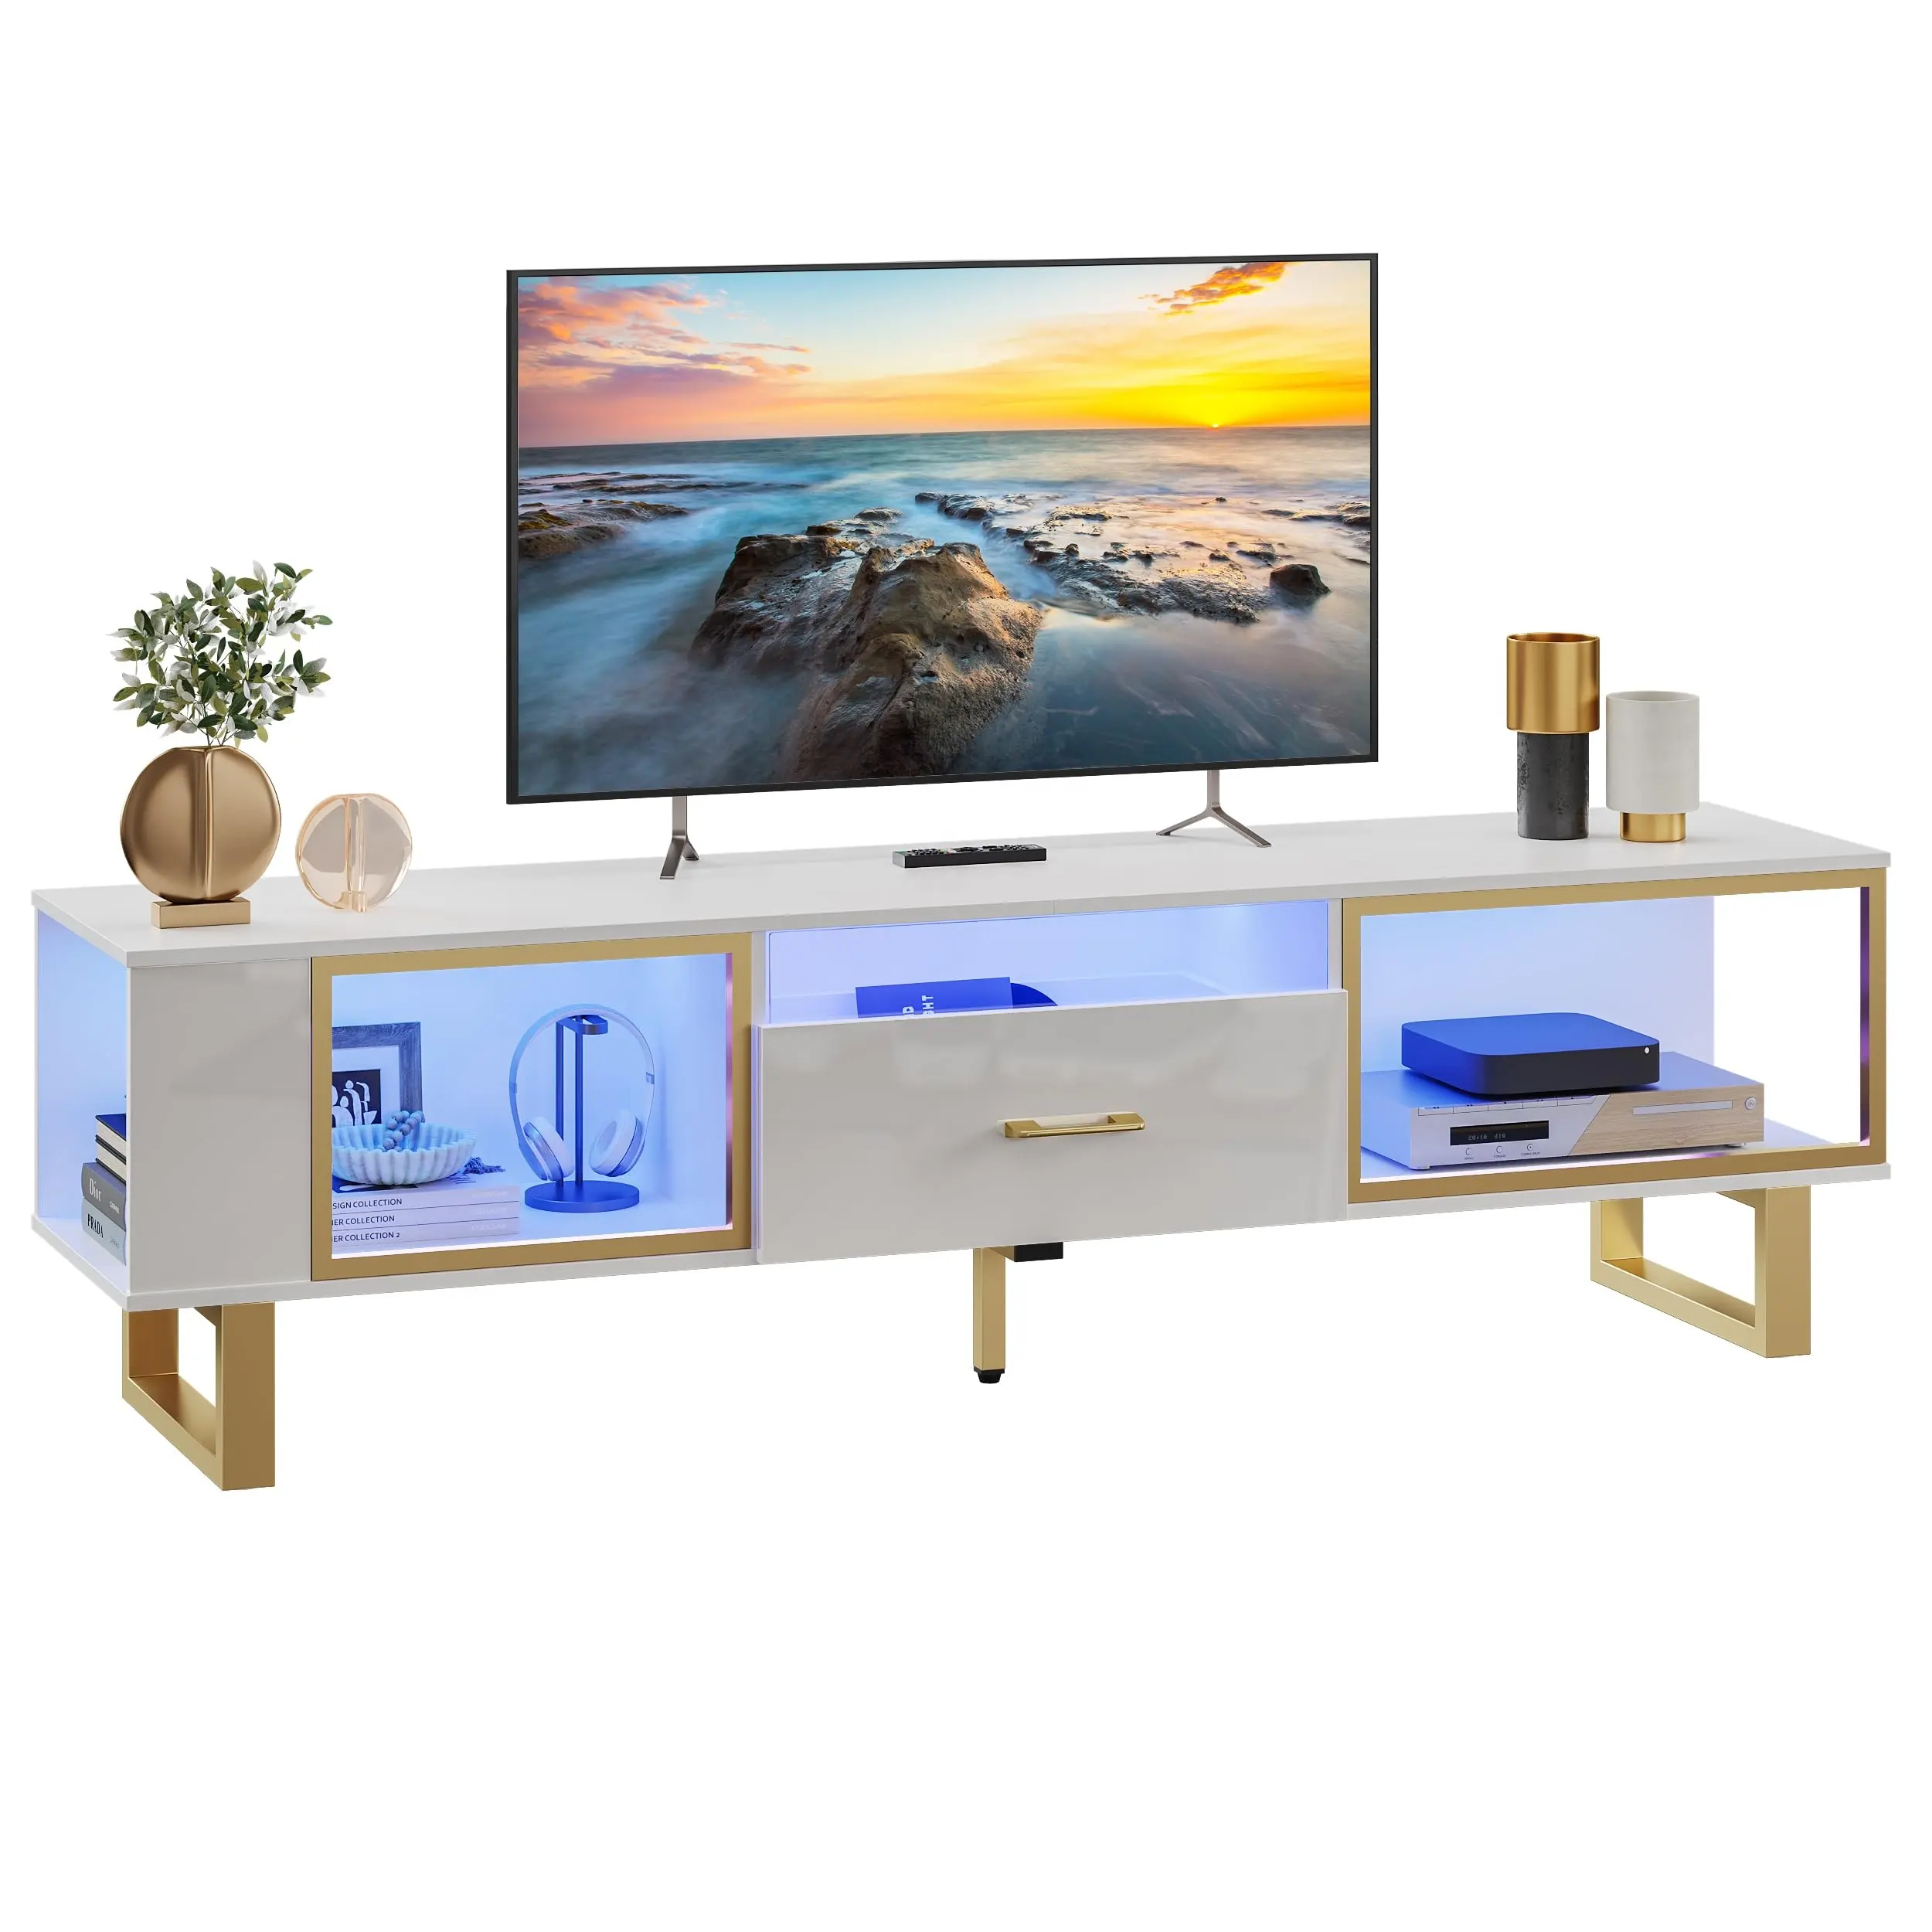 Modern LED fütüristik yüksek beyaz ahşap TV standı Modern TV kabine lüks Modern TV mobilya oturma odası için